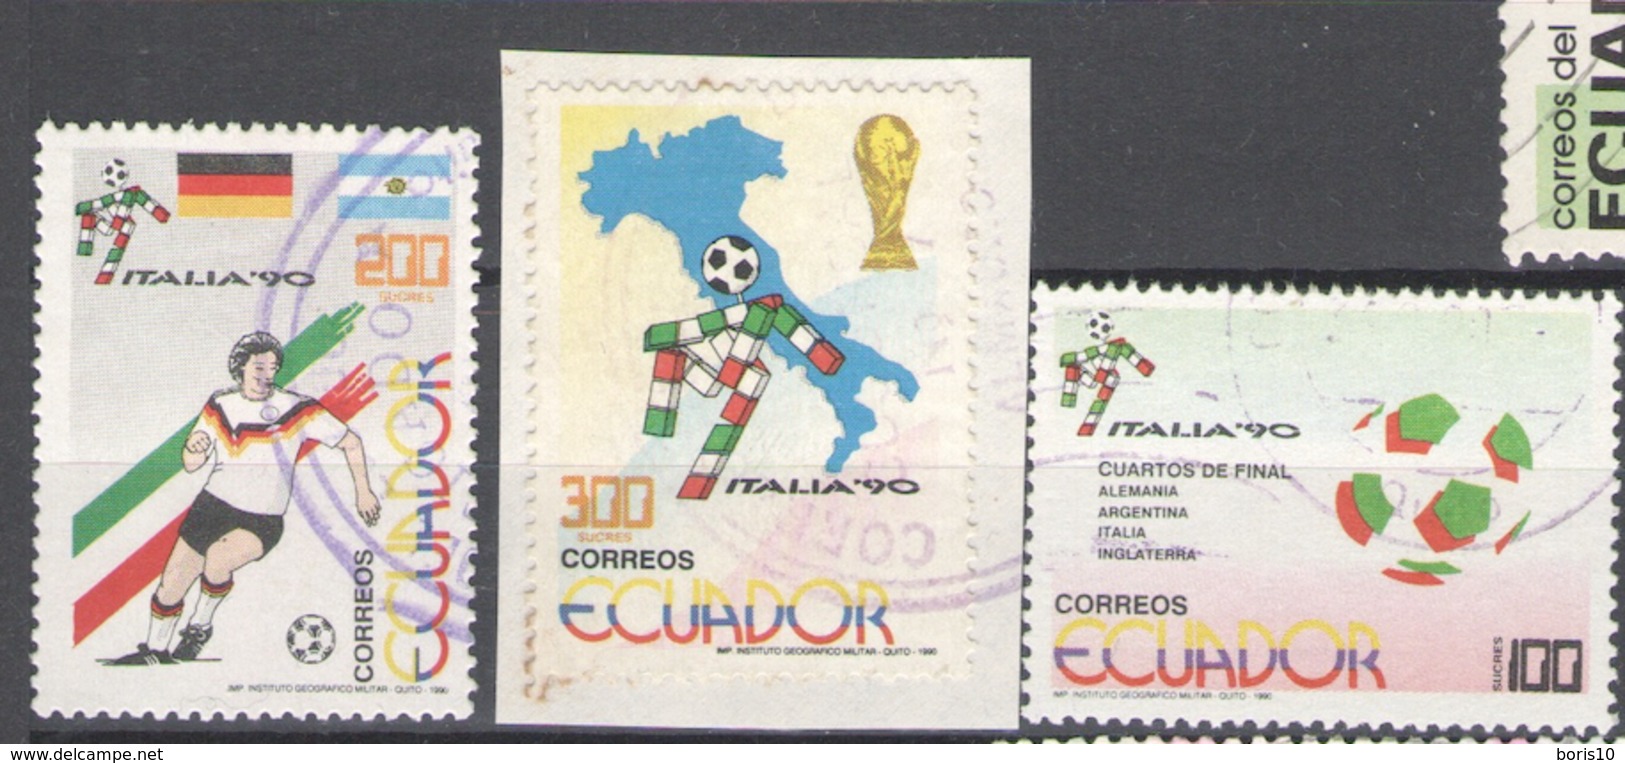 Ecuador Used 1990 Football, Soccer, World Cup - Italy - Ecuador